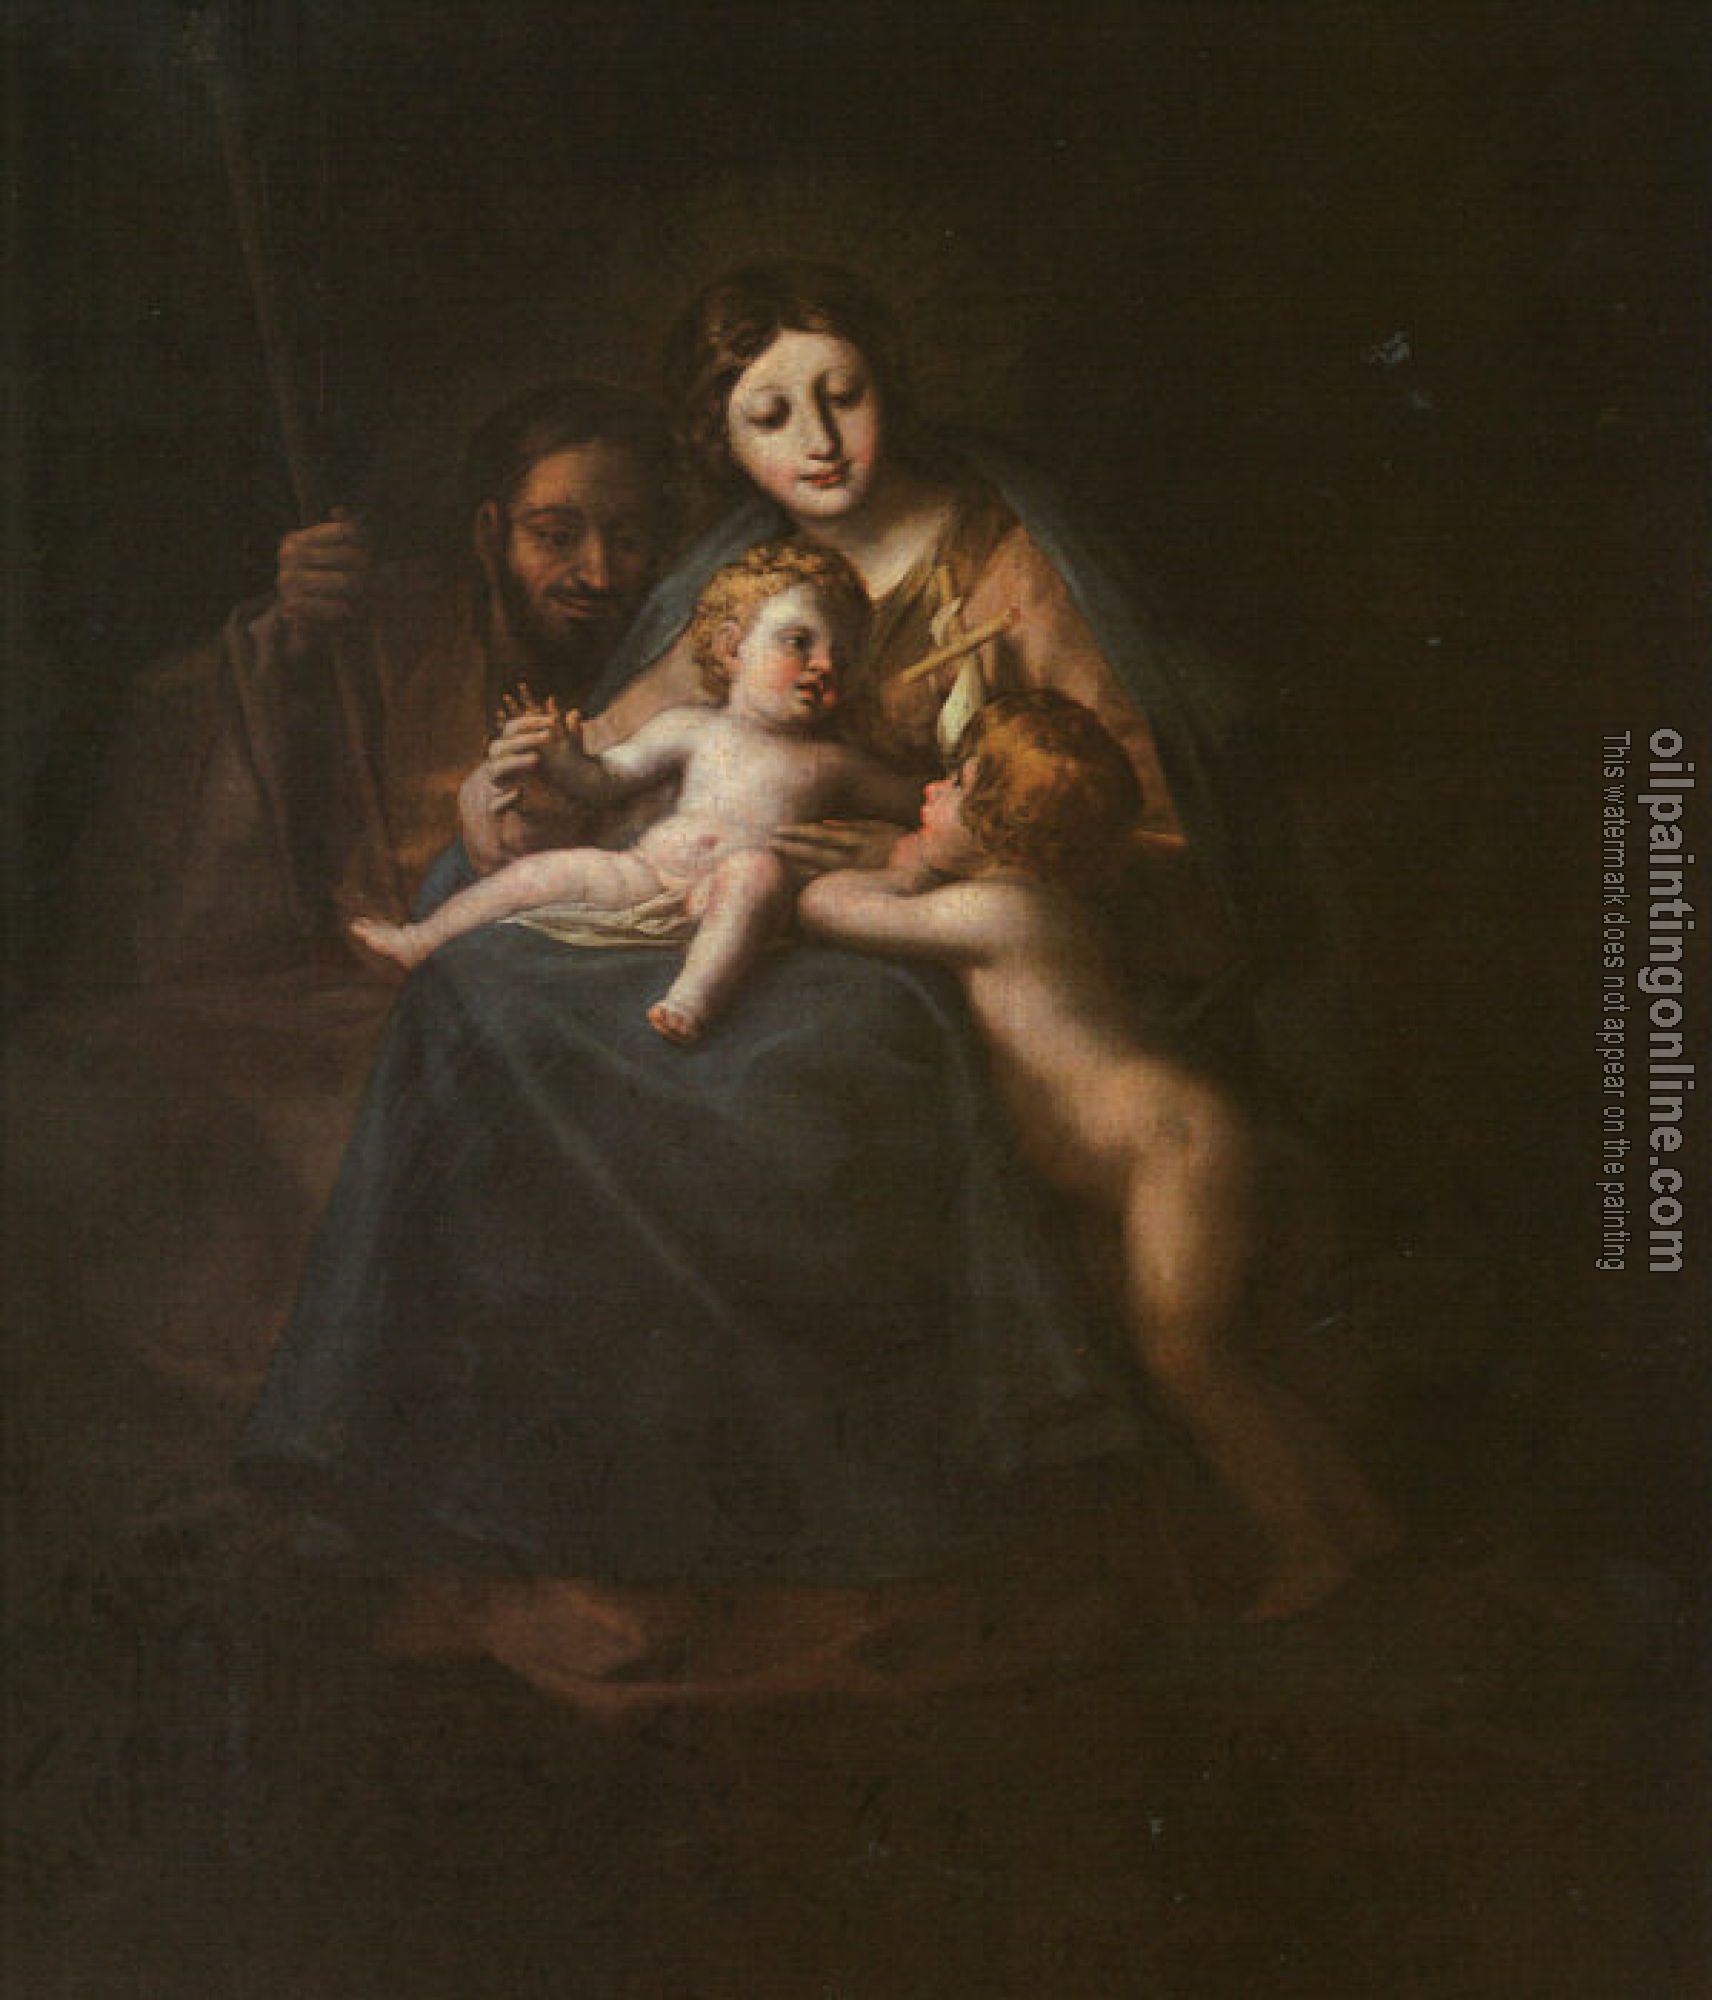 Goya, Francisco de - The Holy Family